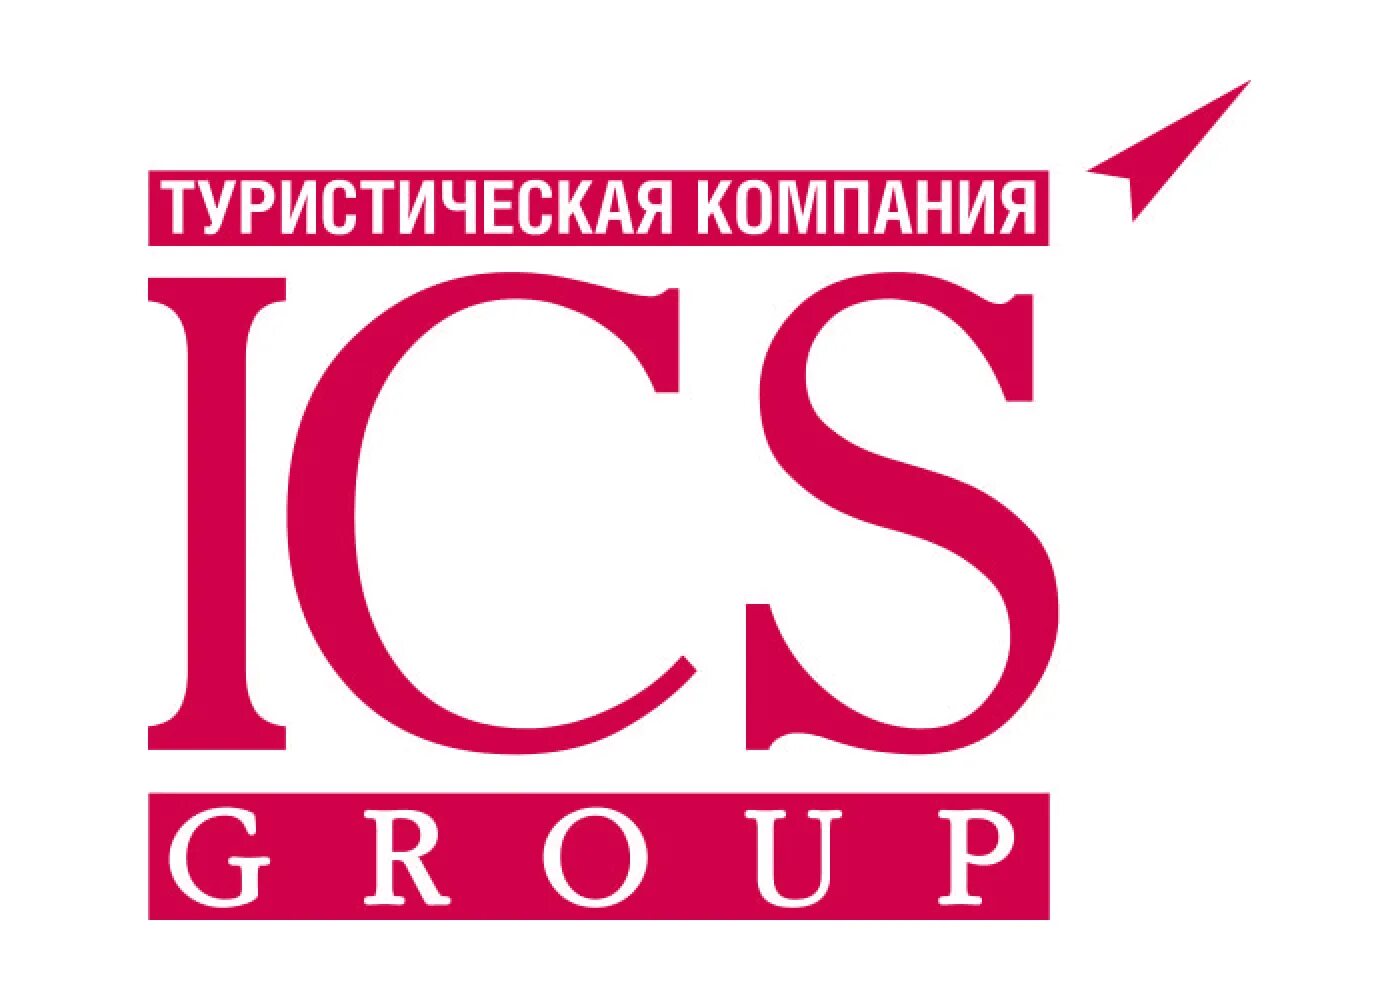 Си эс 2. ICS туроператор. Туроператор ICS Travel. ICS Travel Group. ICS Travel Group лого.